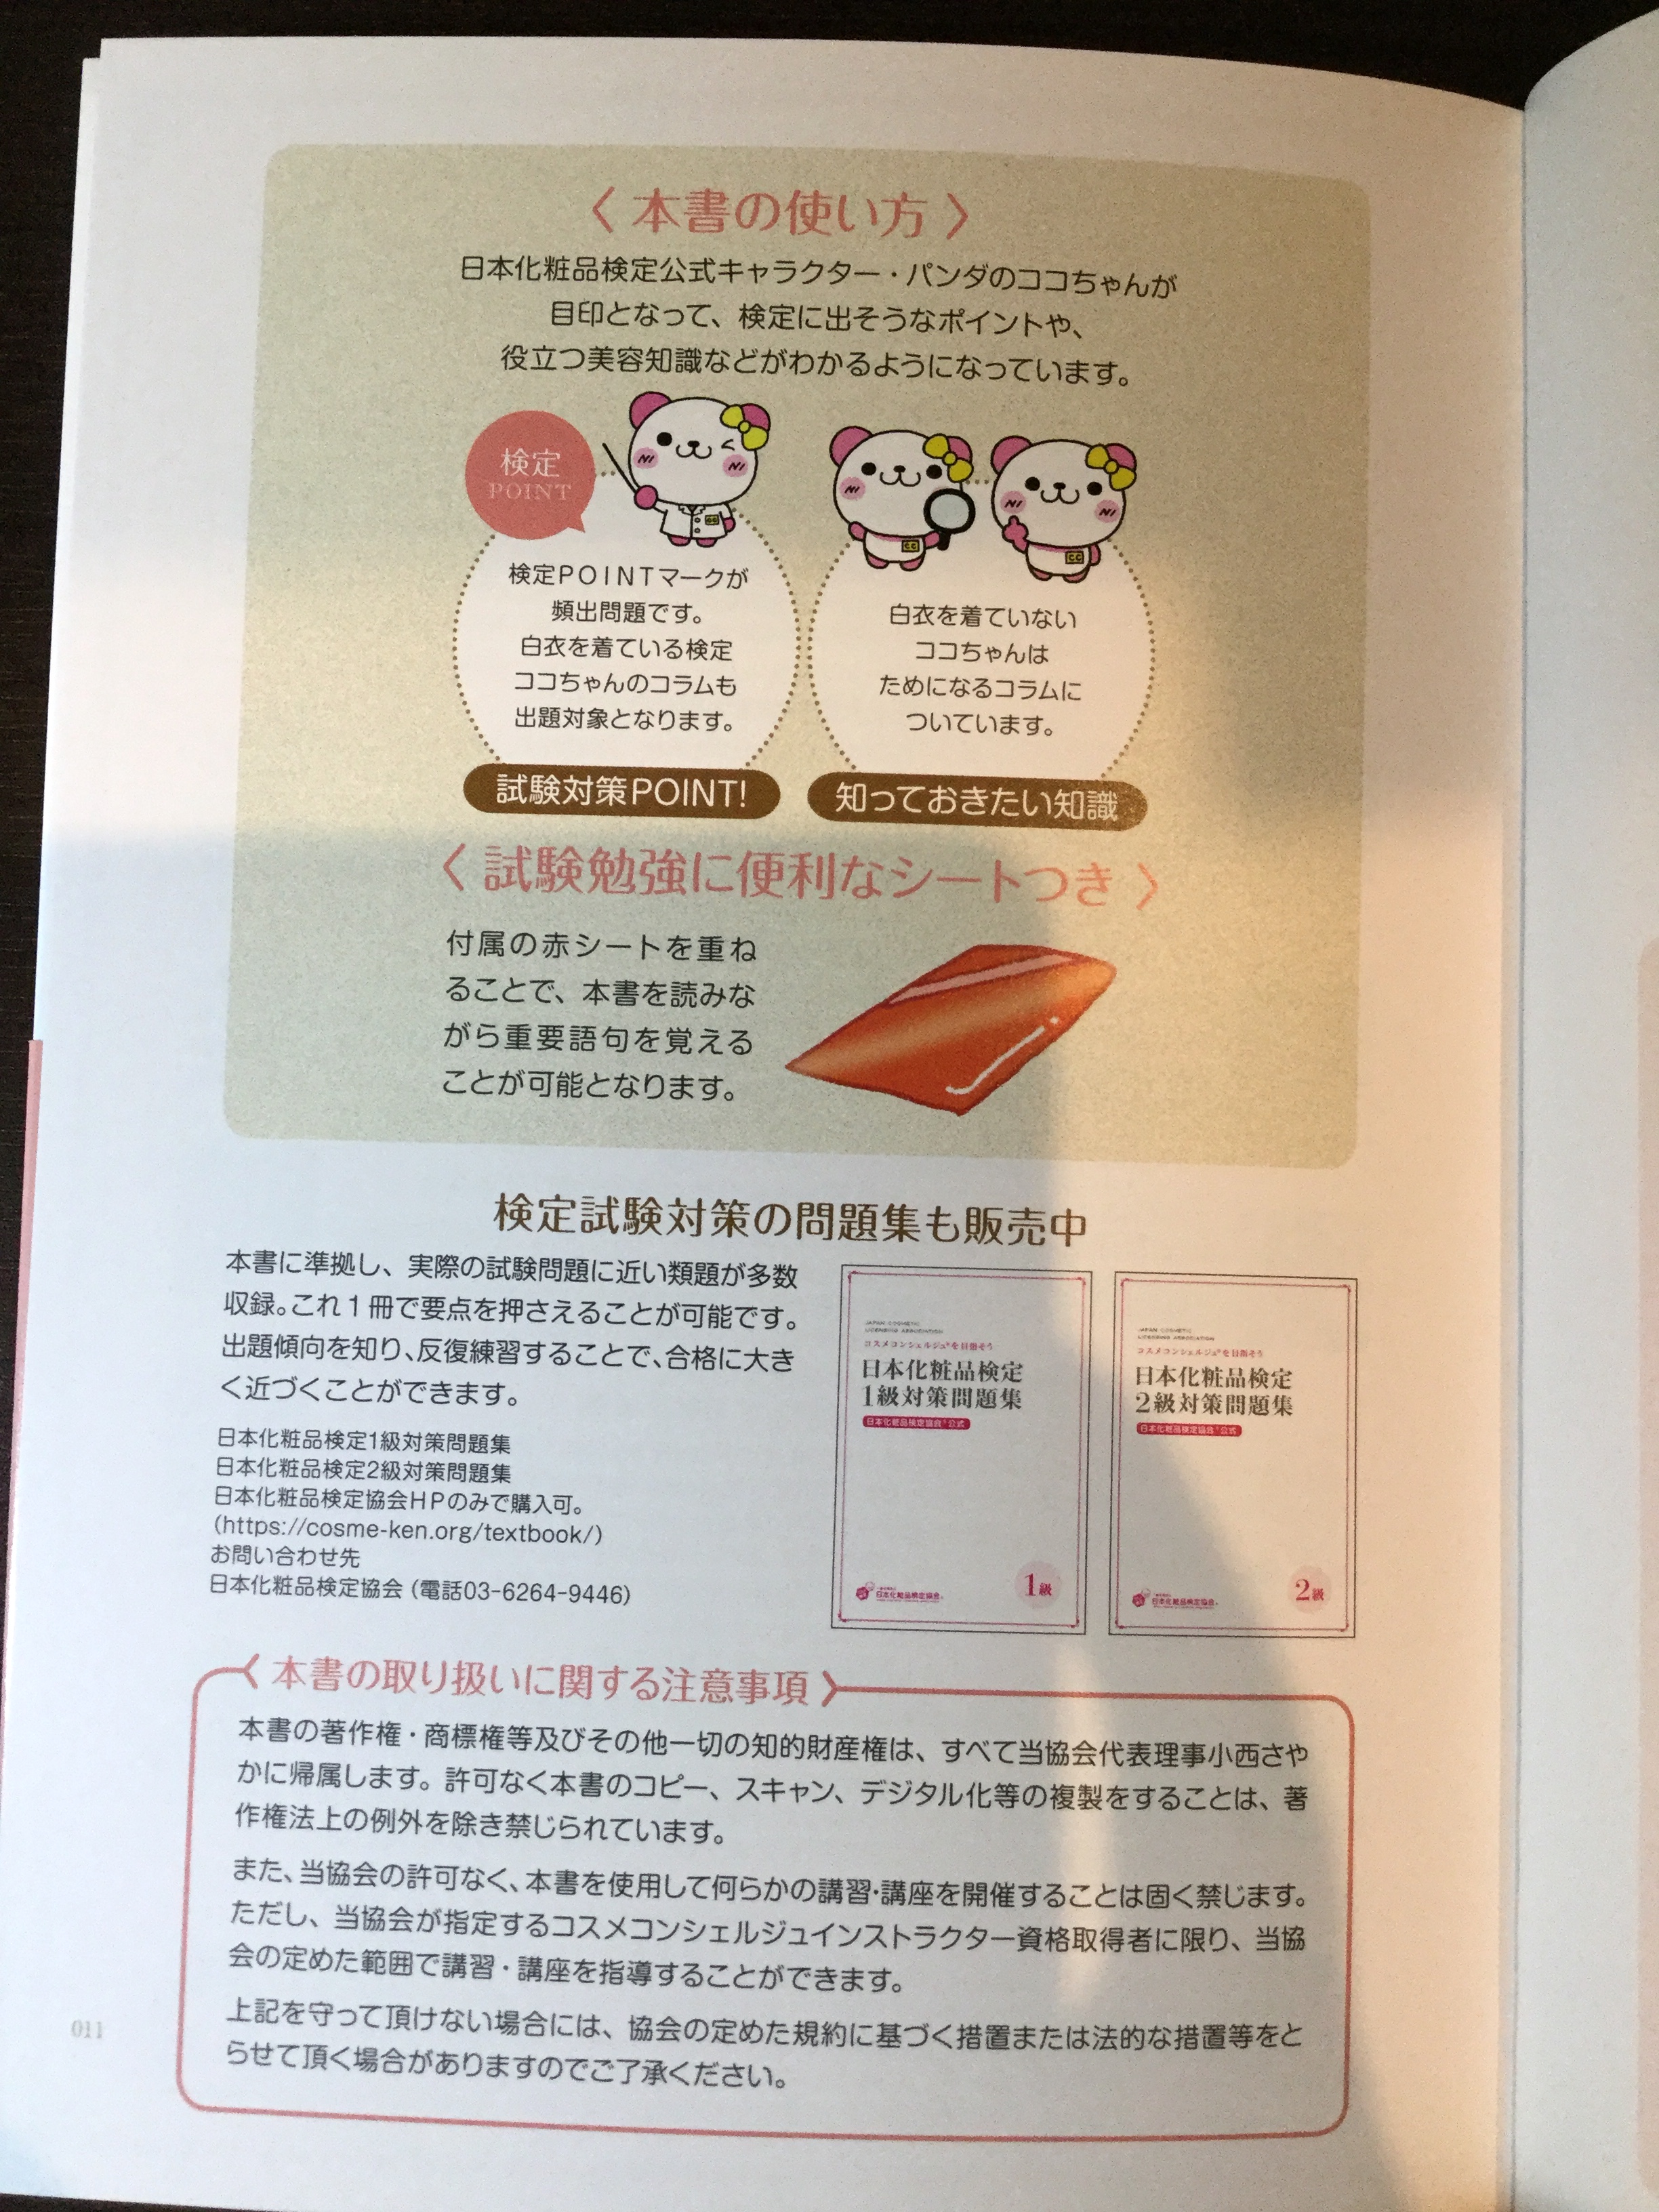 合格 日本化粧品検定2級 3級のおすすめ参考書 テキスト 独学勉強法 対策 資格hacker